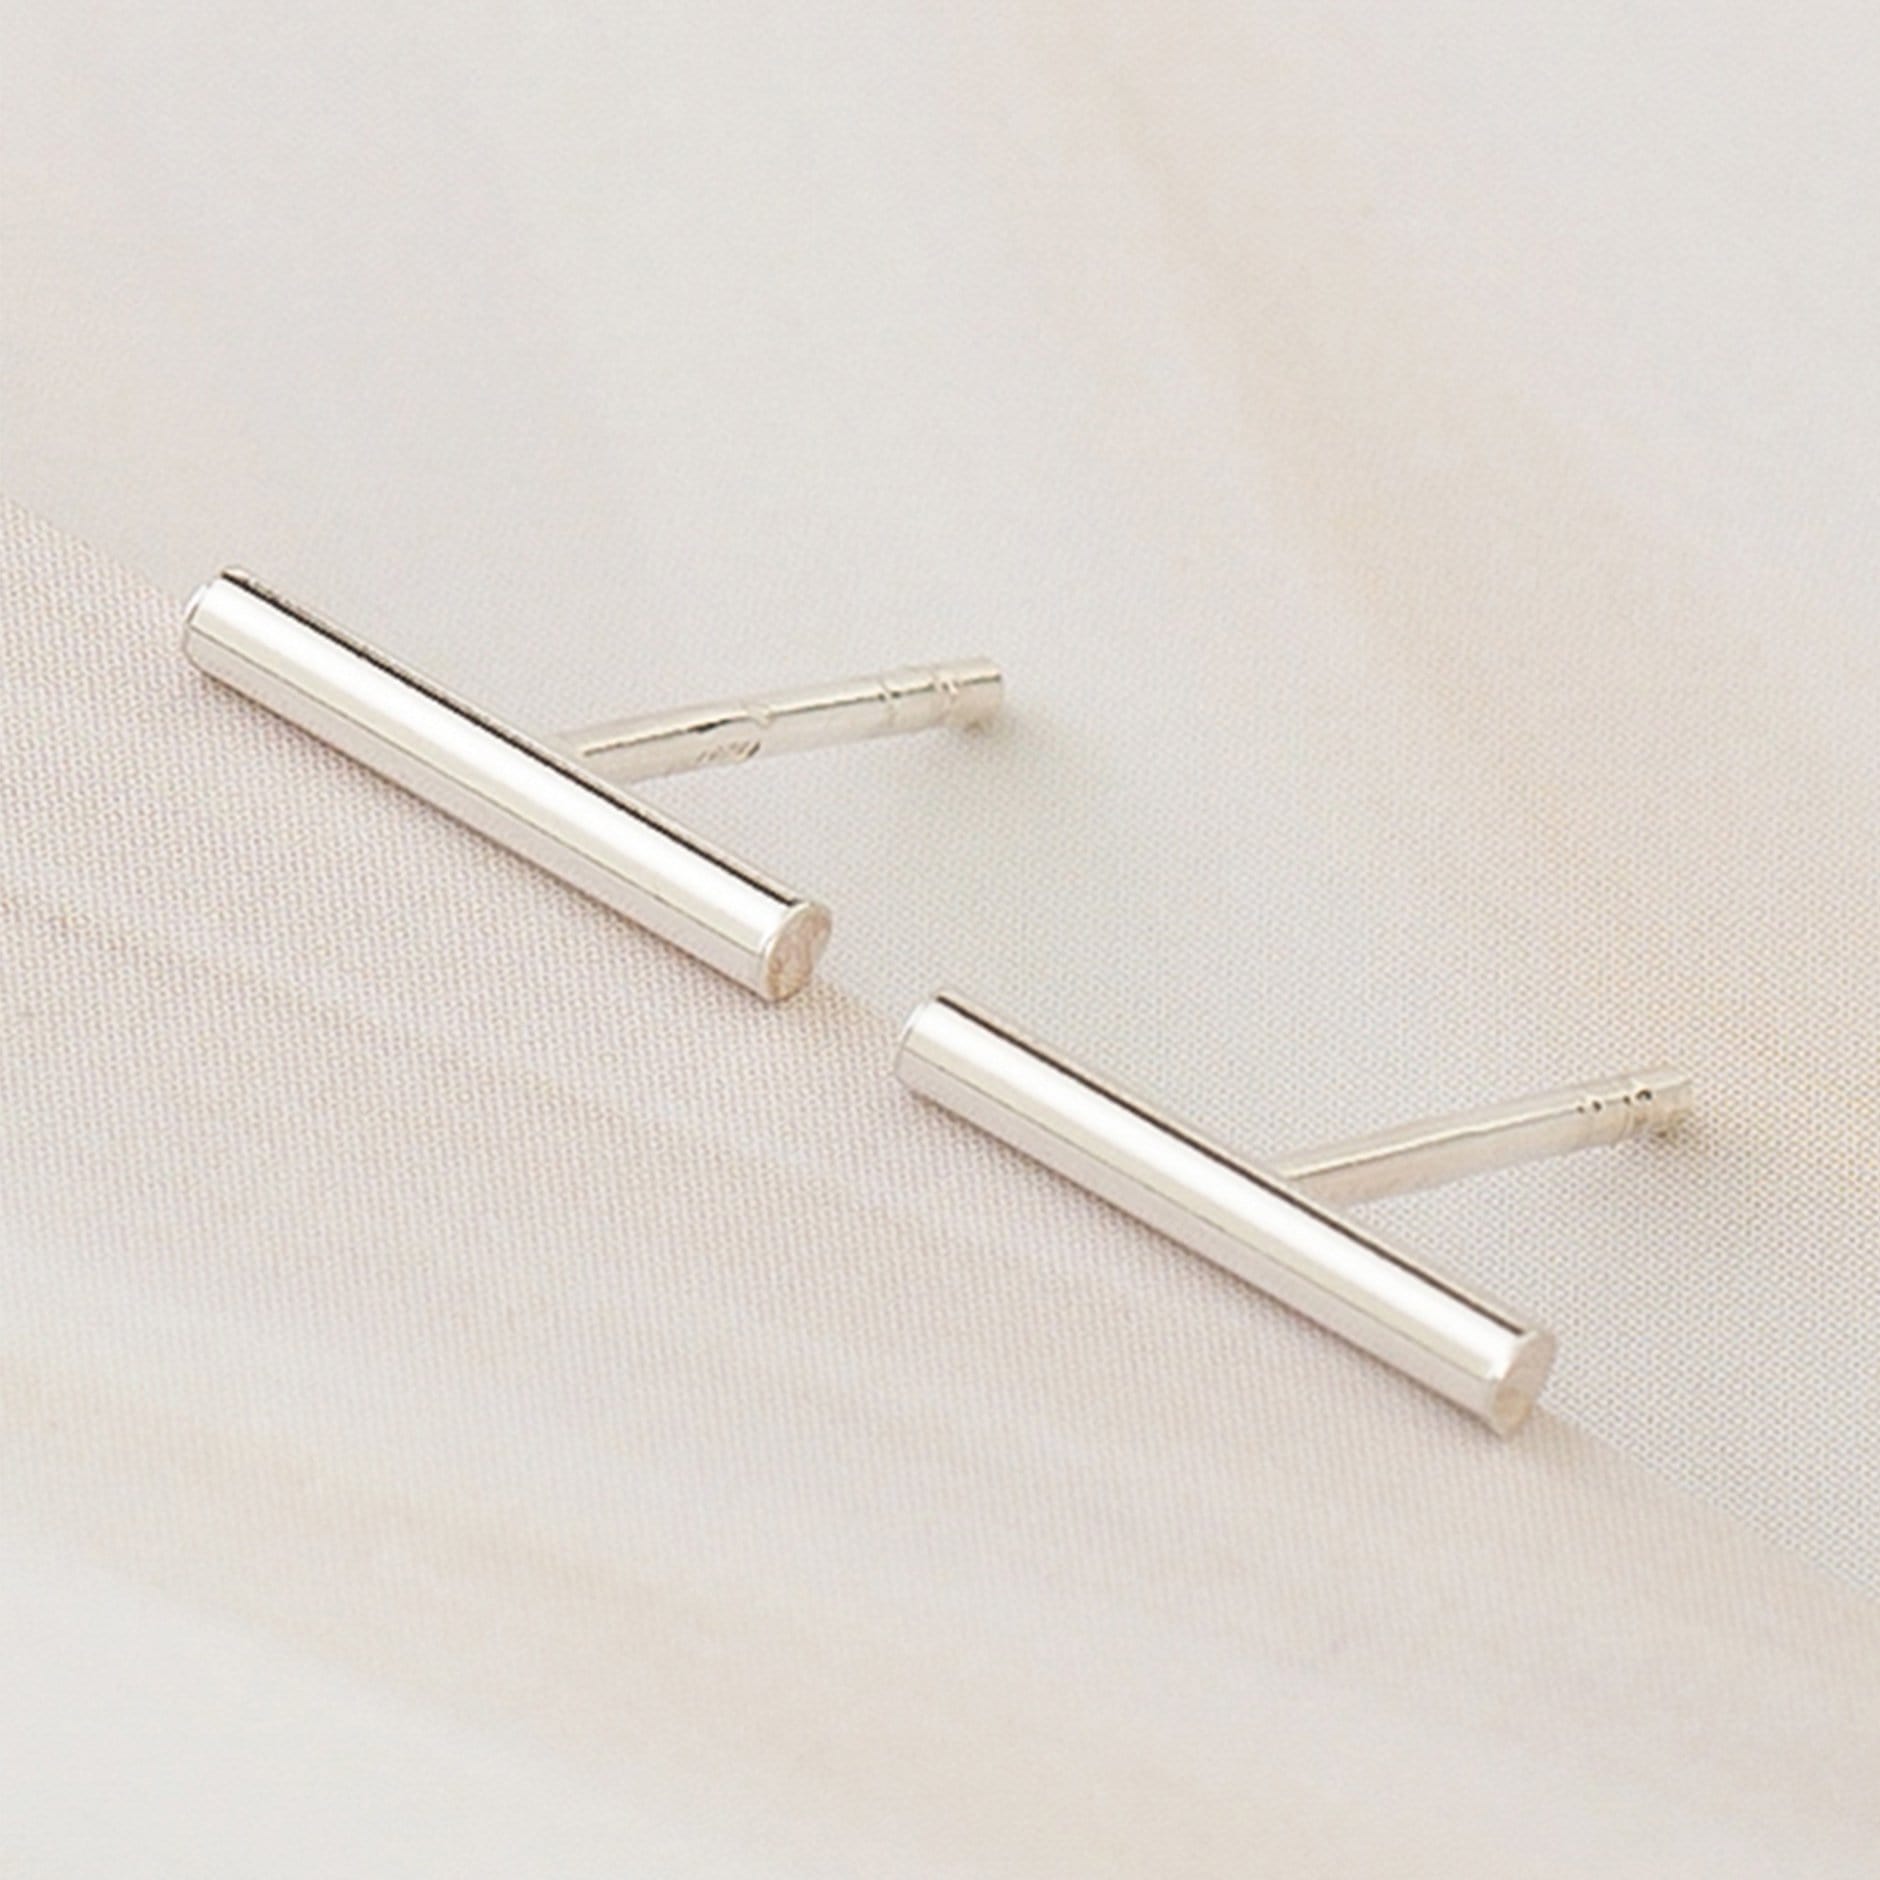 Emblem Jewelry Earrings Silver Tone Morse Code Dash Minimalist Stud Earrings